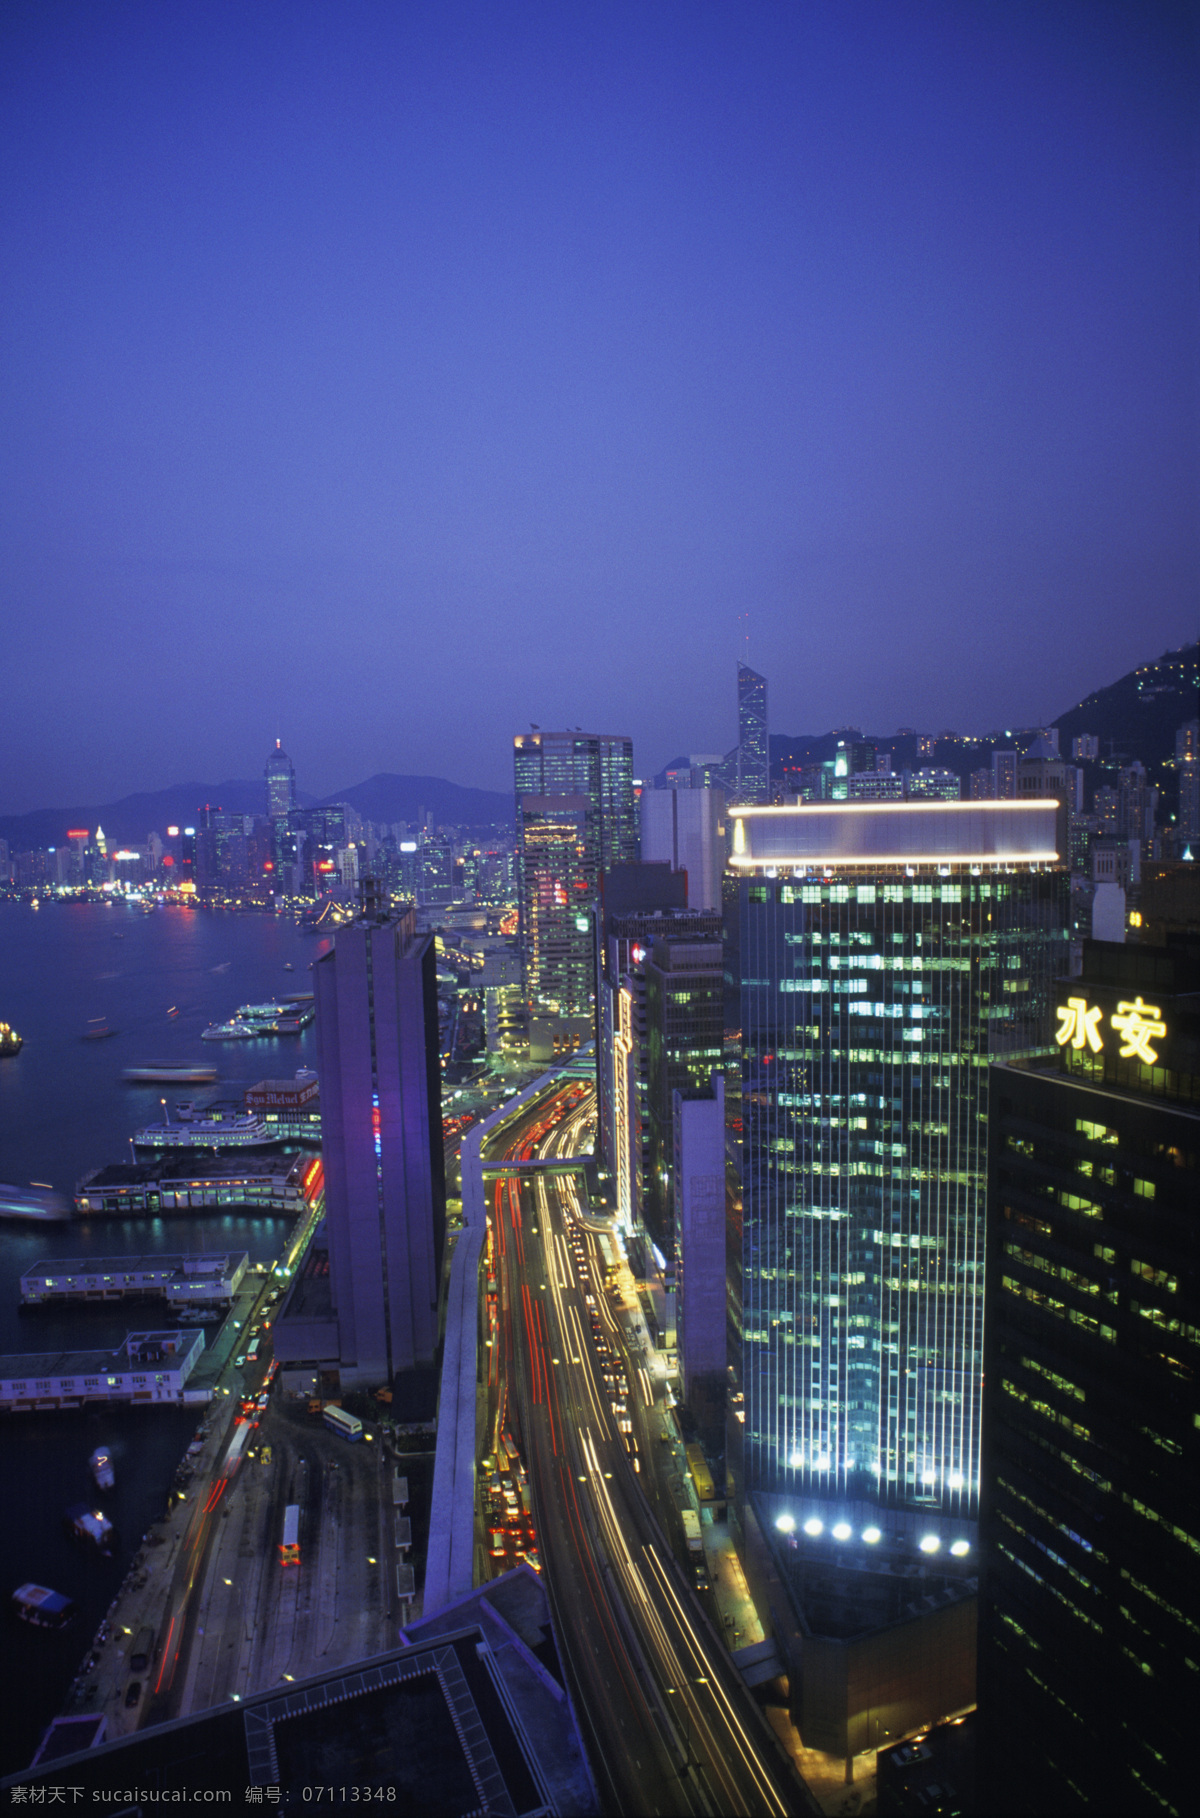 繁华 香港 城市 夜景 城市风光 高楼大厦 建筑 风景 繁荣 城市夜景 大海 海面 码头 船只 街道 灯火辉煌 摄影图 高清图片 环境家居